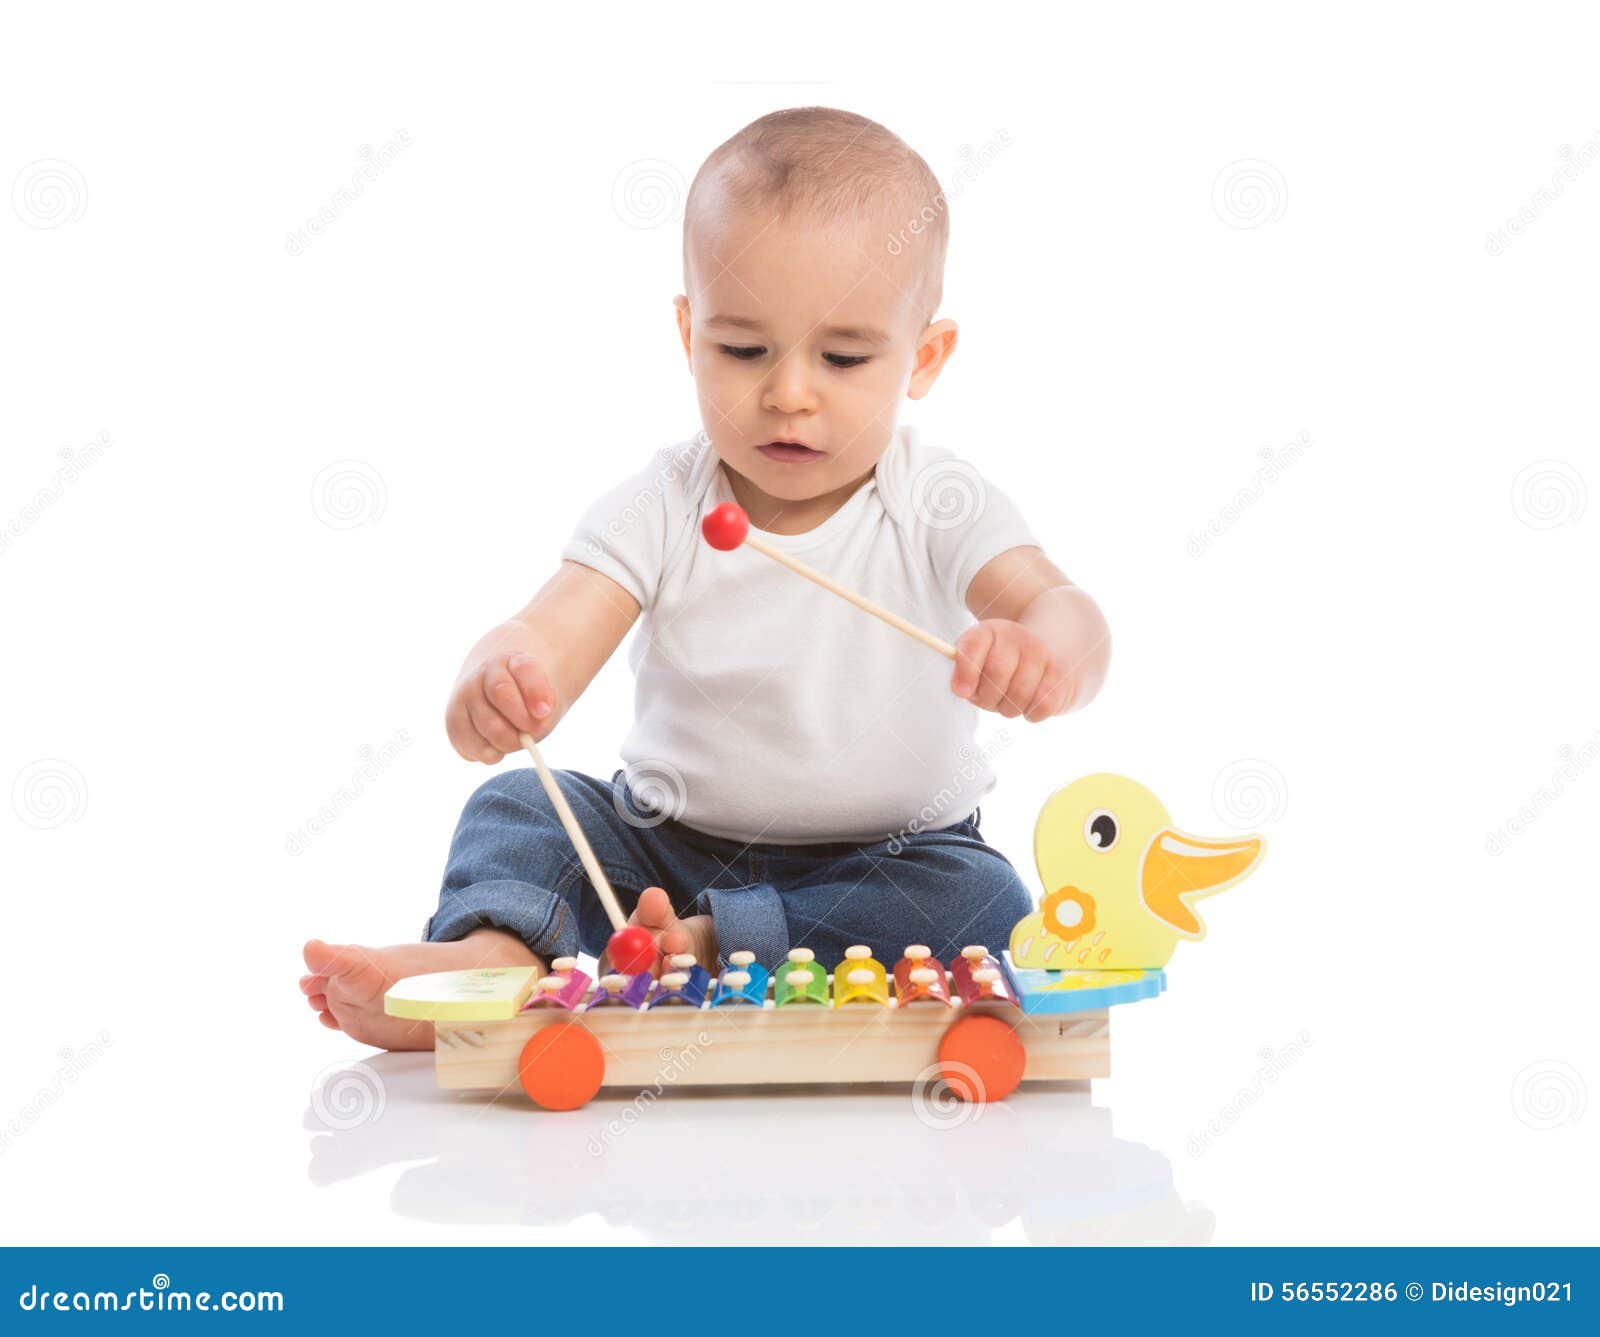 baby enjoy in rhythm music